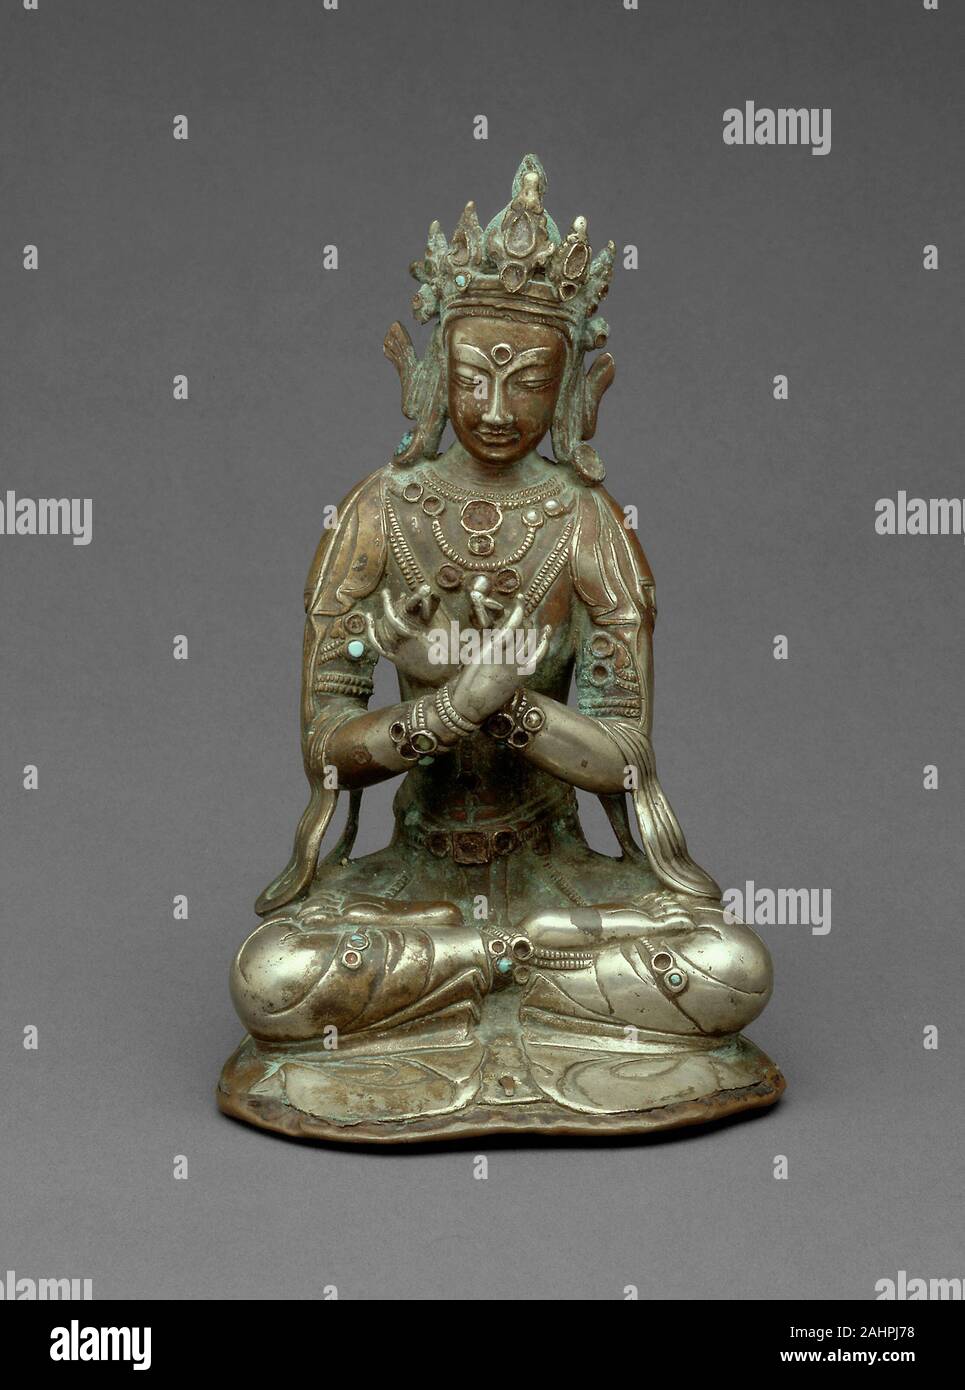 Vajradhara Buddha sitzt mit einem Donnerkeil (Vajra) und die Glocke (ghanta). 1401 - 1500. Süden Tibets. Silber und Halbedelsteinen dieses Silber? gure, obwohl wie ein bodhisattva geschmückt, ist wahrscheinlicher, die Buddha Vajradhara. Wahrscheinlich diente als Zentrum eines dreidimensionalen Mandalas. Der Buddha sitzt in der Meditationshaltung halten einen Vajra (thunderbolt) und Bell in einer Geste, bekannt als das diamantene vajrahumkara (Sound). Bestimmte Sekten des Buddhismus im Himalaya betrachten Vajradhara, der Schöpfer und höchste Macht. Er ist der Begründer von den fünf Transzendenten Buddhas und verkörpert shunyata Stockfoto